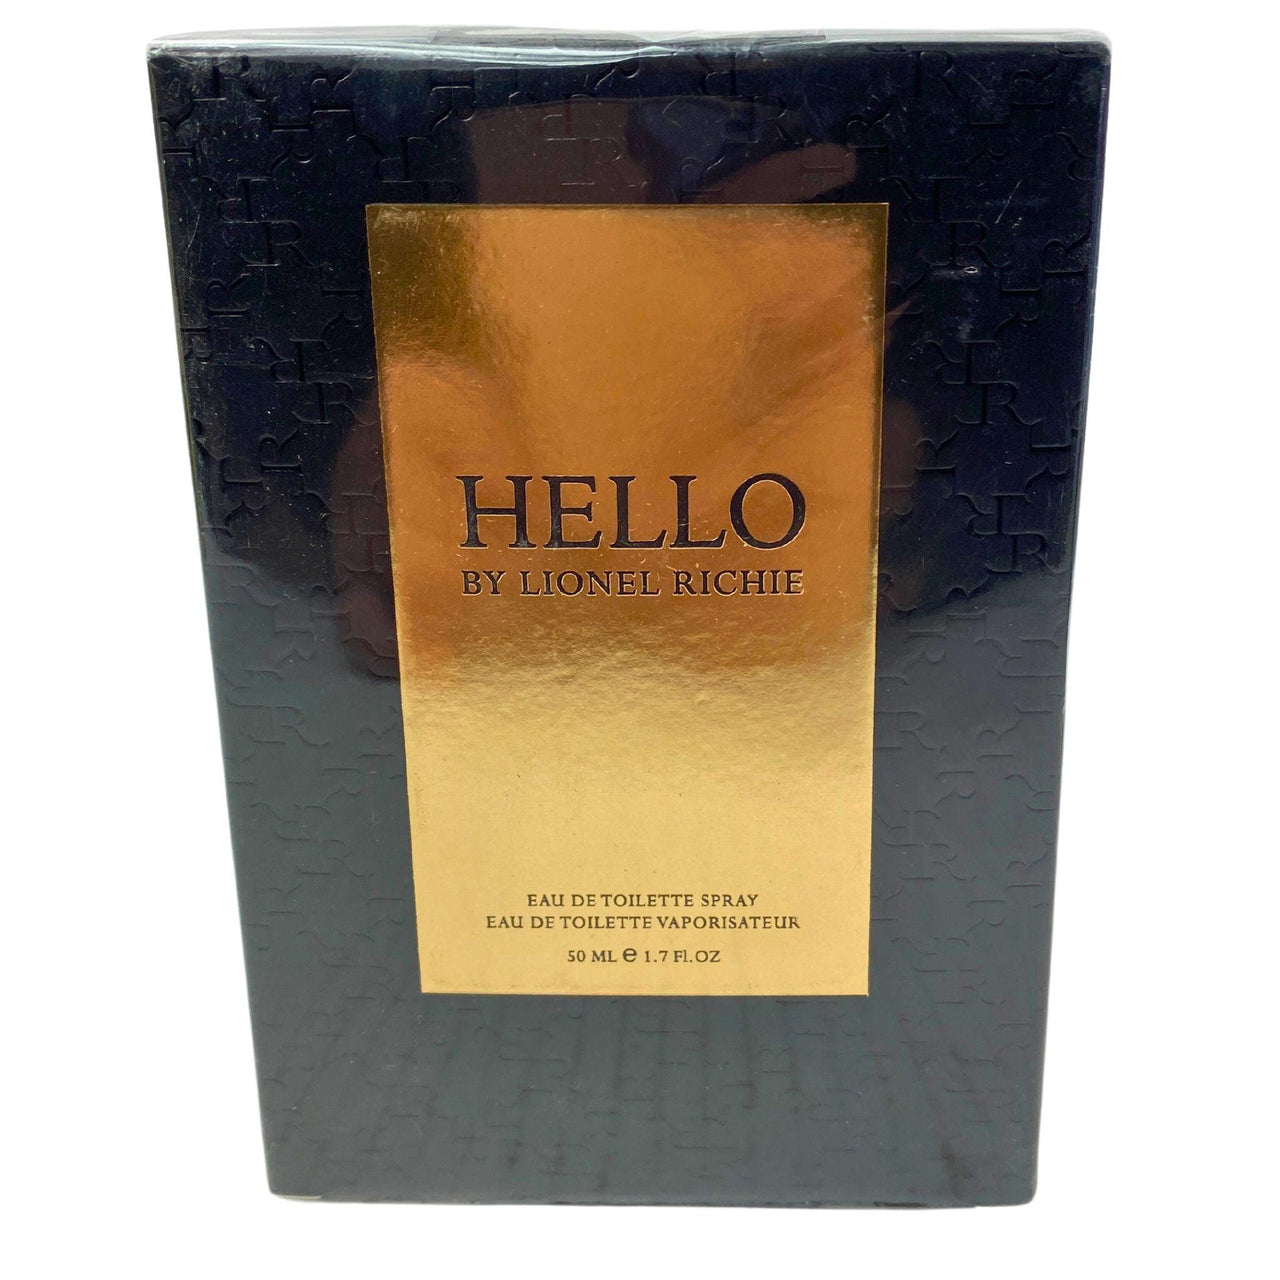 Lionel Richie Hello for Men, EDT Men's Cologne, Fragrance for Men, 1.7 oz (20 Pcs Lot) - Discount Wholesalers Inc